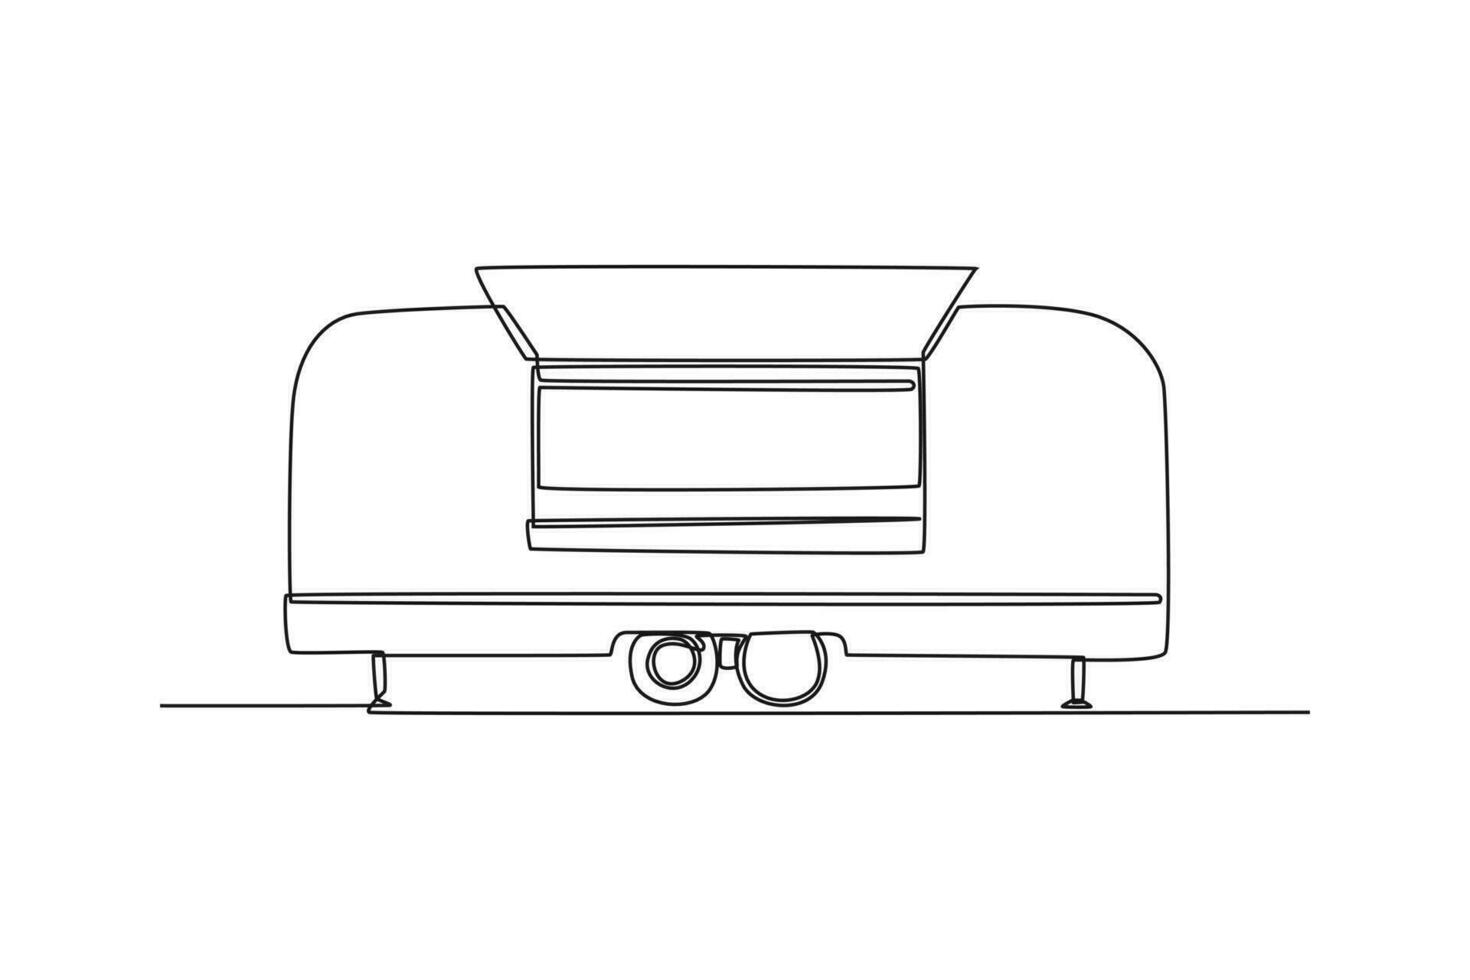 soltero uno línea dibujo comida camiones restaurante en ruedas furgonetas para calle comida venta. coche concepto. continuo línea dibujar diseño gráfico vector ilustración.